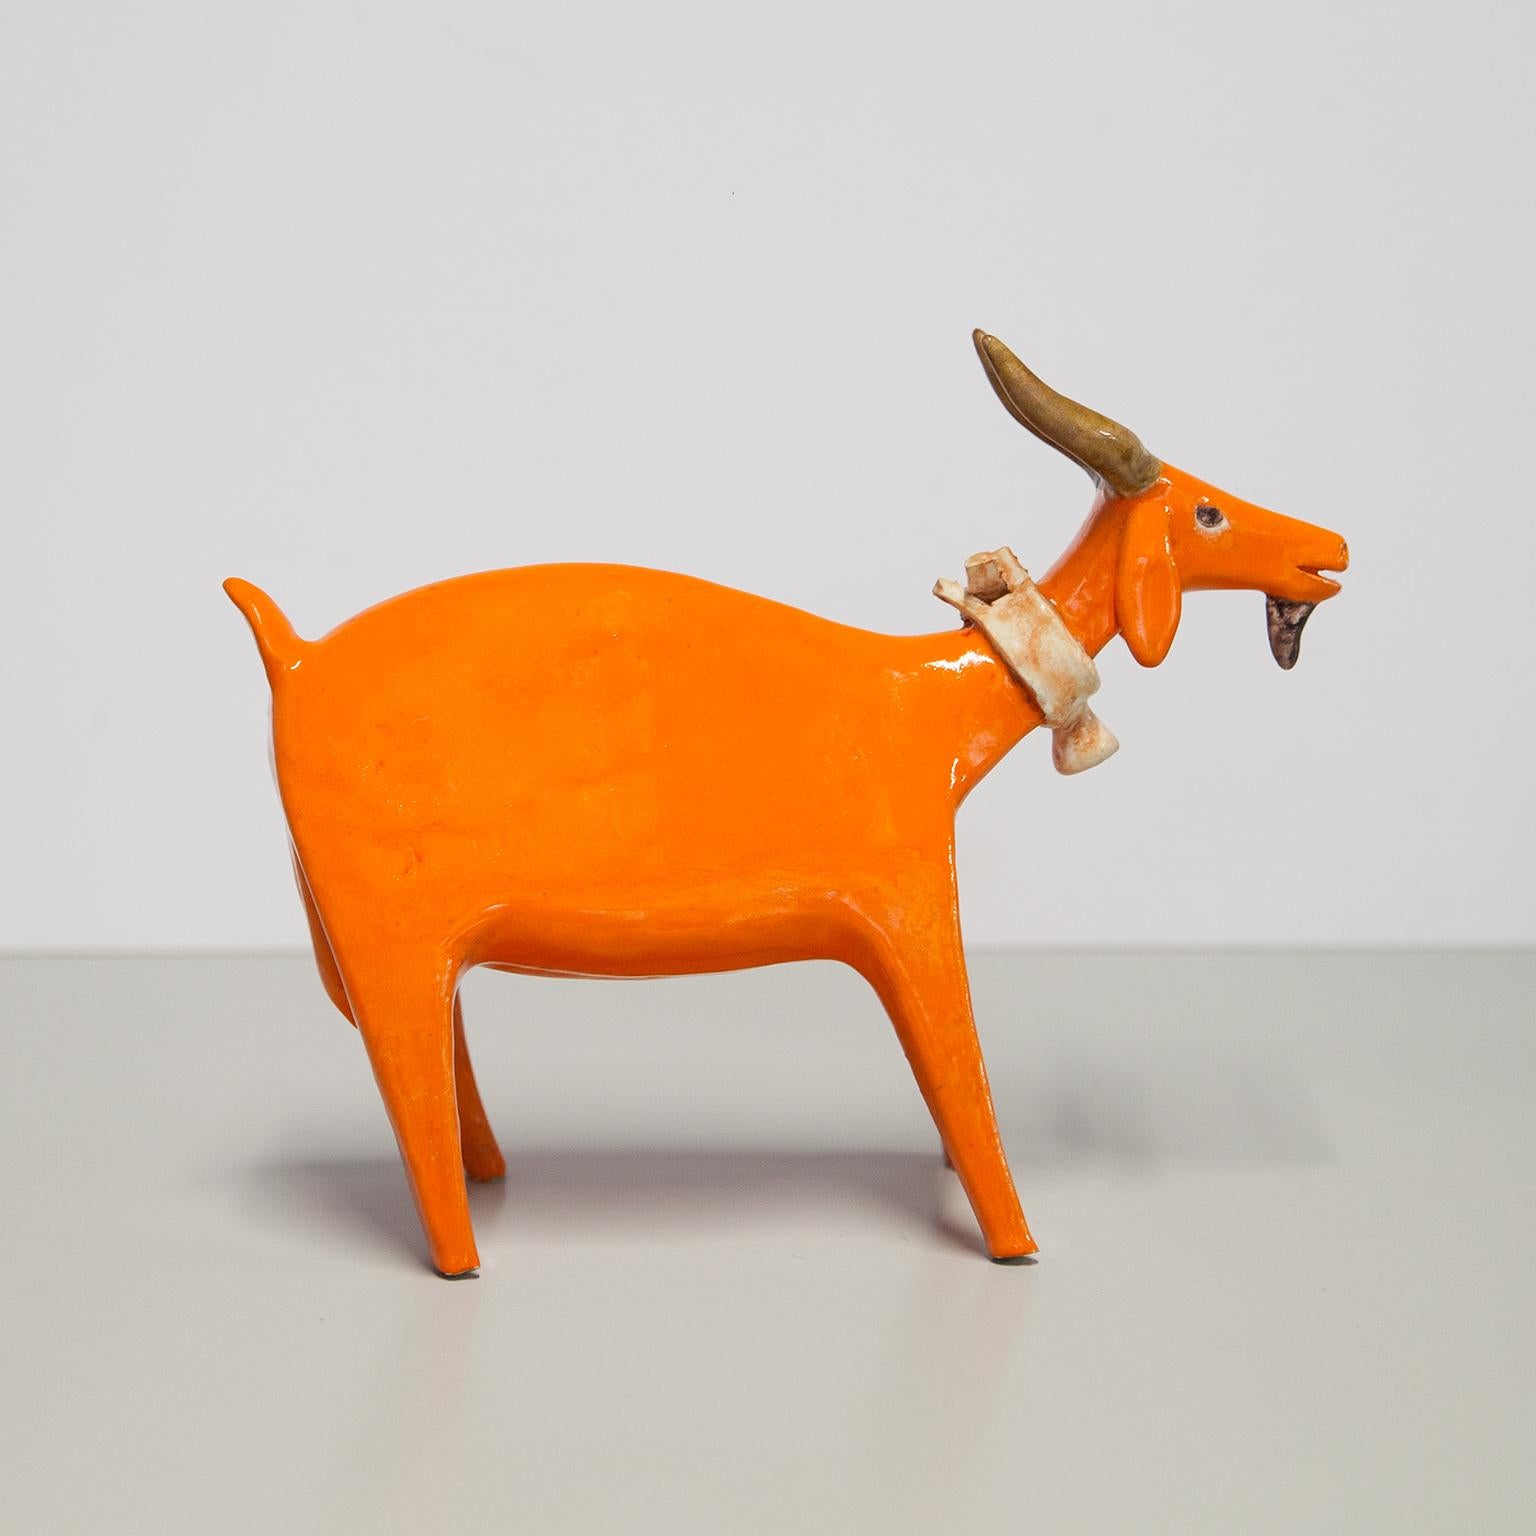 Chèvre en céramique émaillée orange réalisée par Bruno Gambone dans les années 1970, signée Gambone Italie sur le fond. Très rare à trouver dans le design orange glacé et en excellent état.